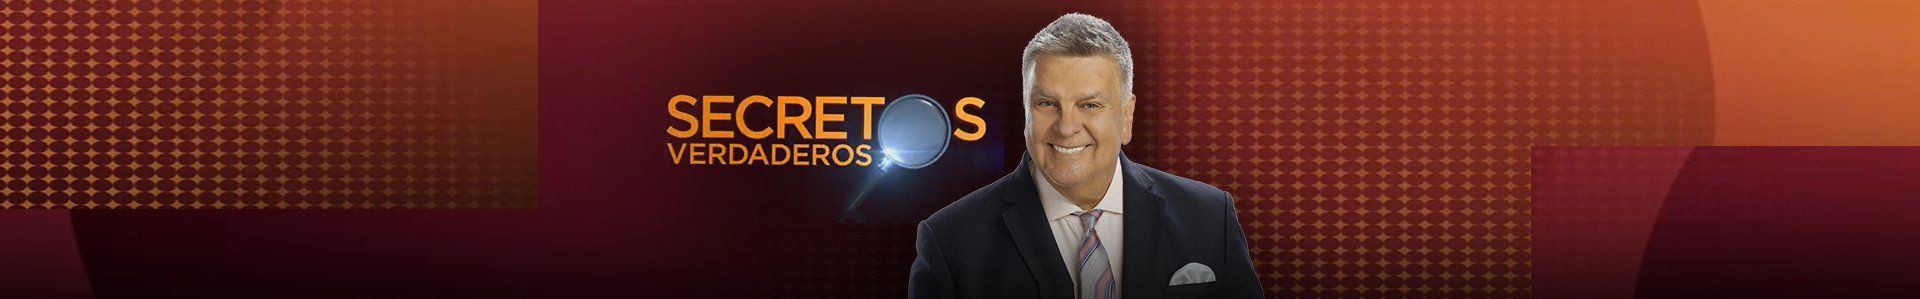 AmericaTV | LO ÚLTIMO DE SECRETOS VERDADEROS